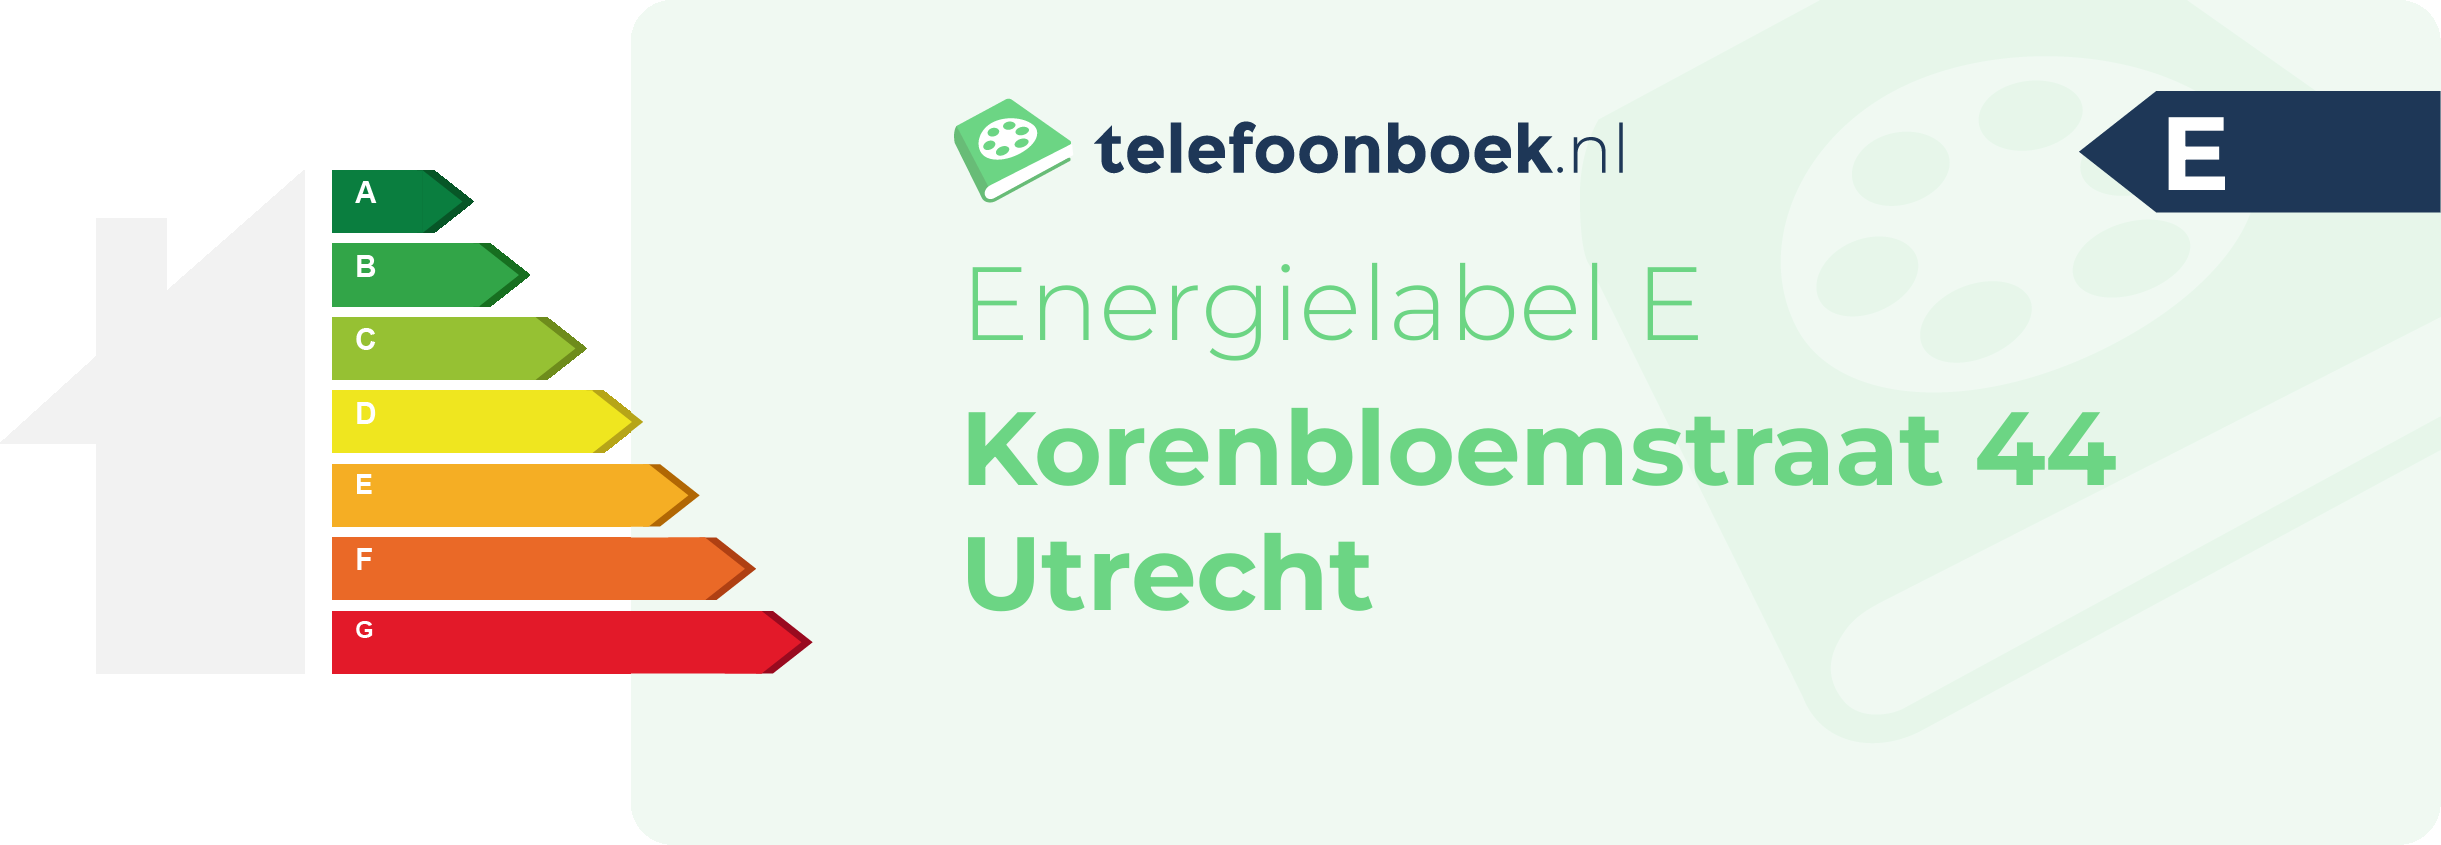 Energielabel Korenbloemstraat 44 Utrecht